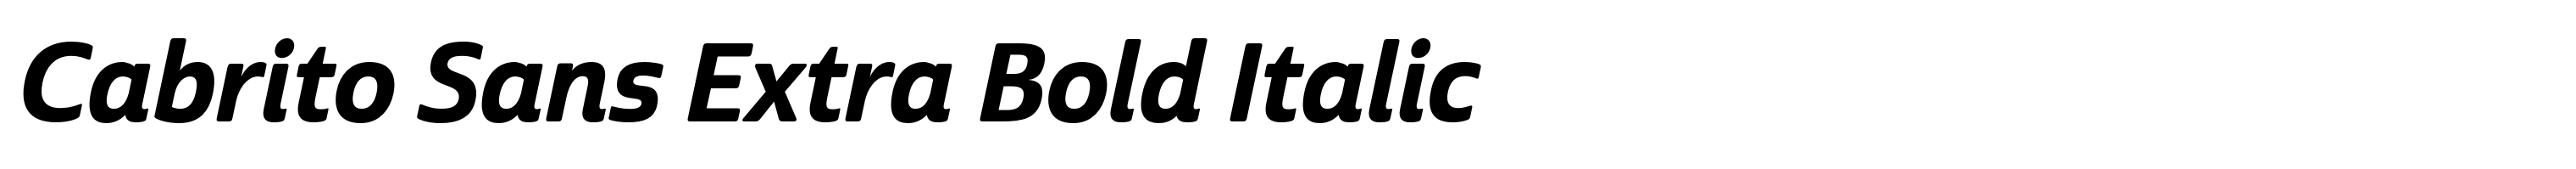 Cabrito Sans Extra Bold Italic